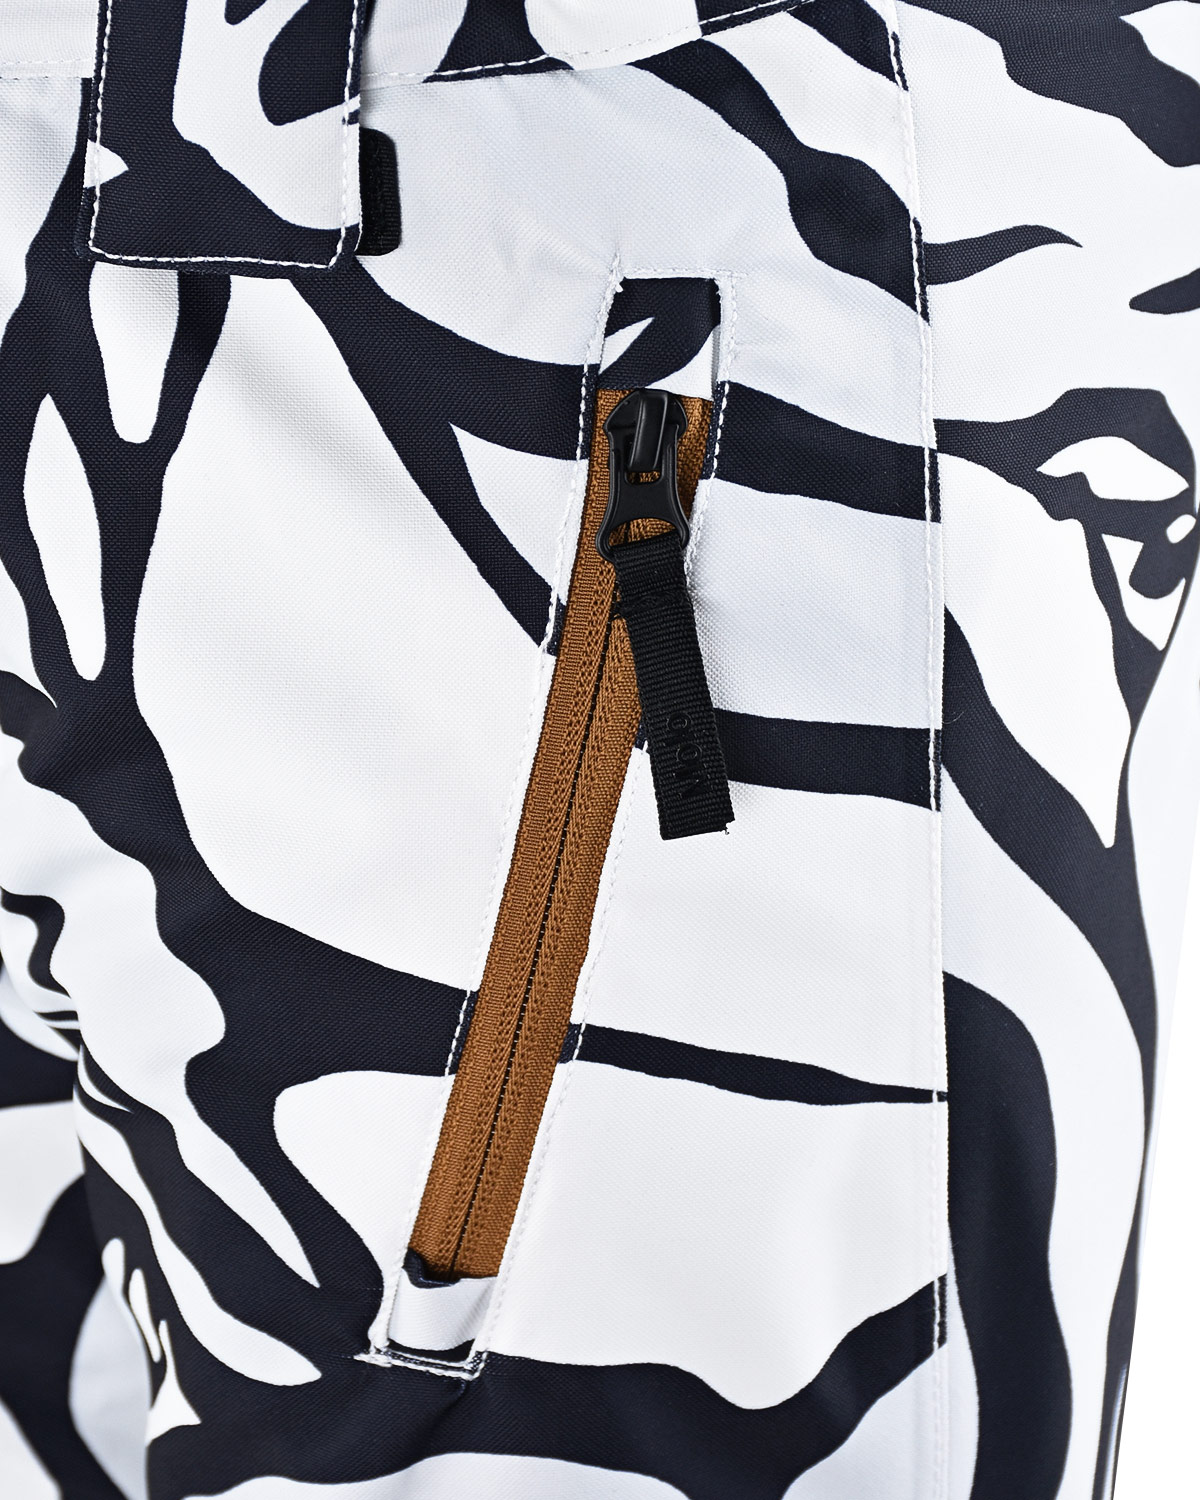 Комплект с принтом "зебра" (куртка, брюки, подтяжки) Molo детский, размер 140, цвет нет цвета Комплект с принтом "зебра" (куртка, брюки, подтяжки) Molo детский - фото 7